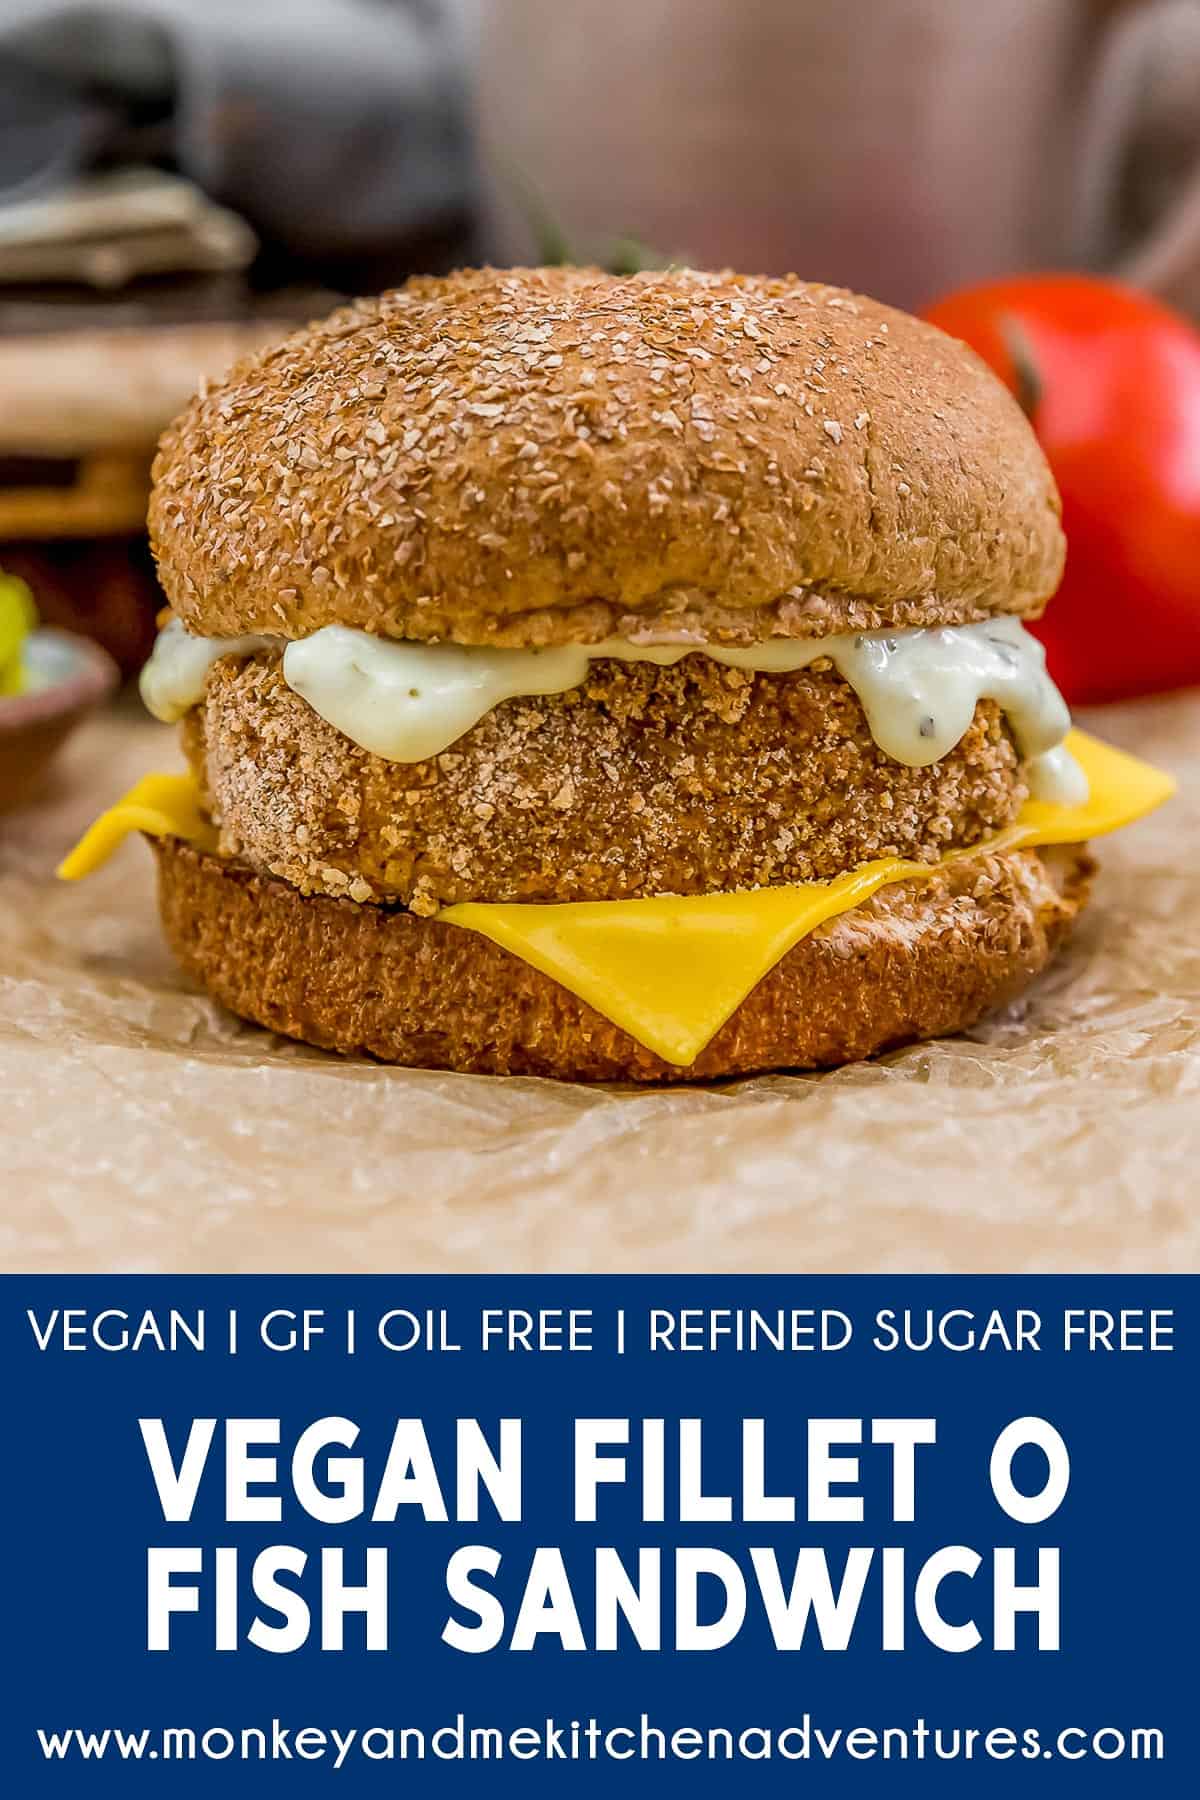 Vegan Fillet O Fish Sandwich with text description